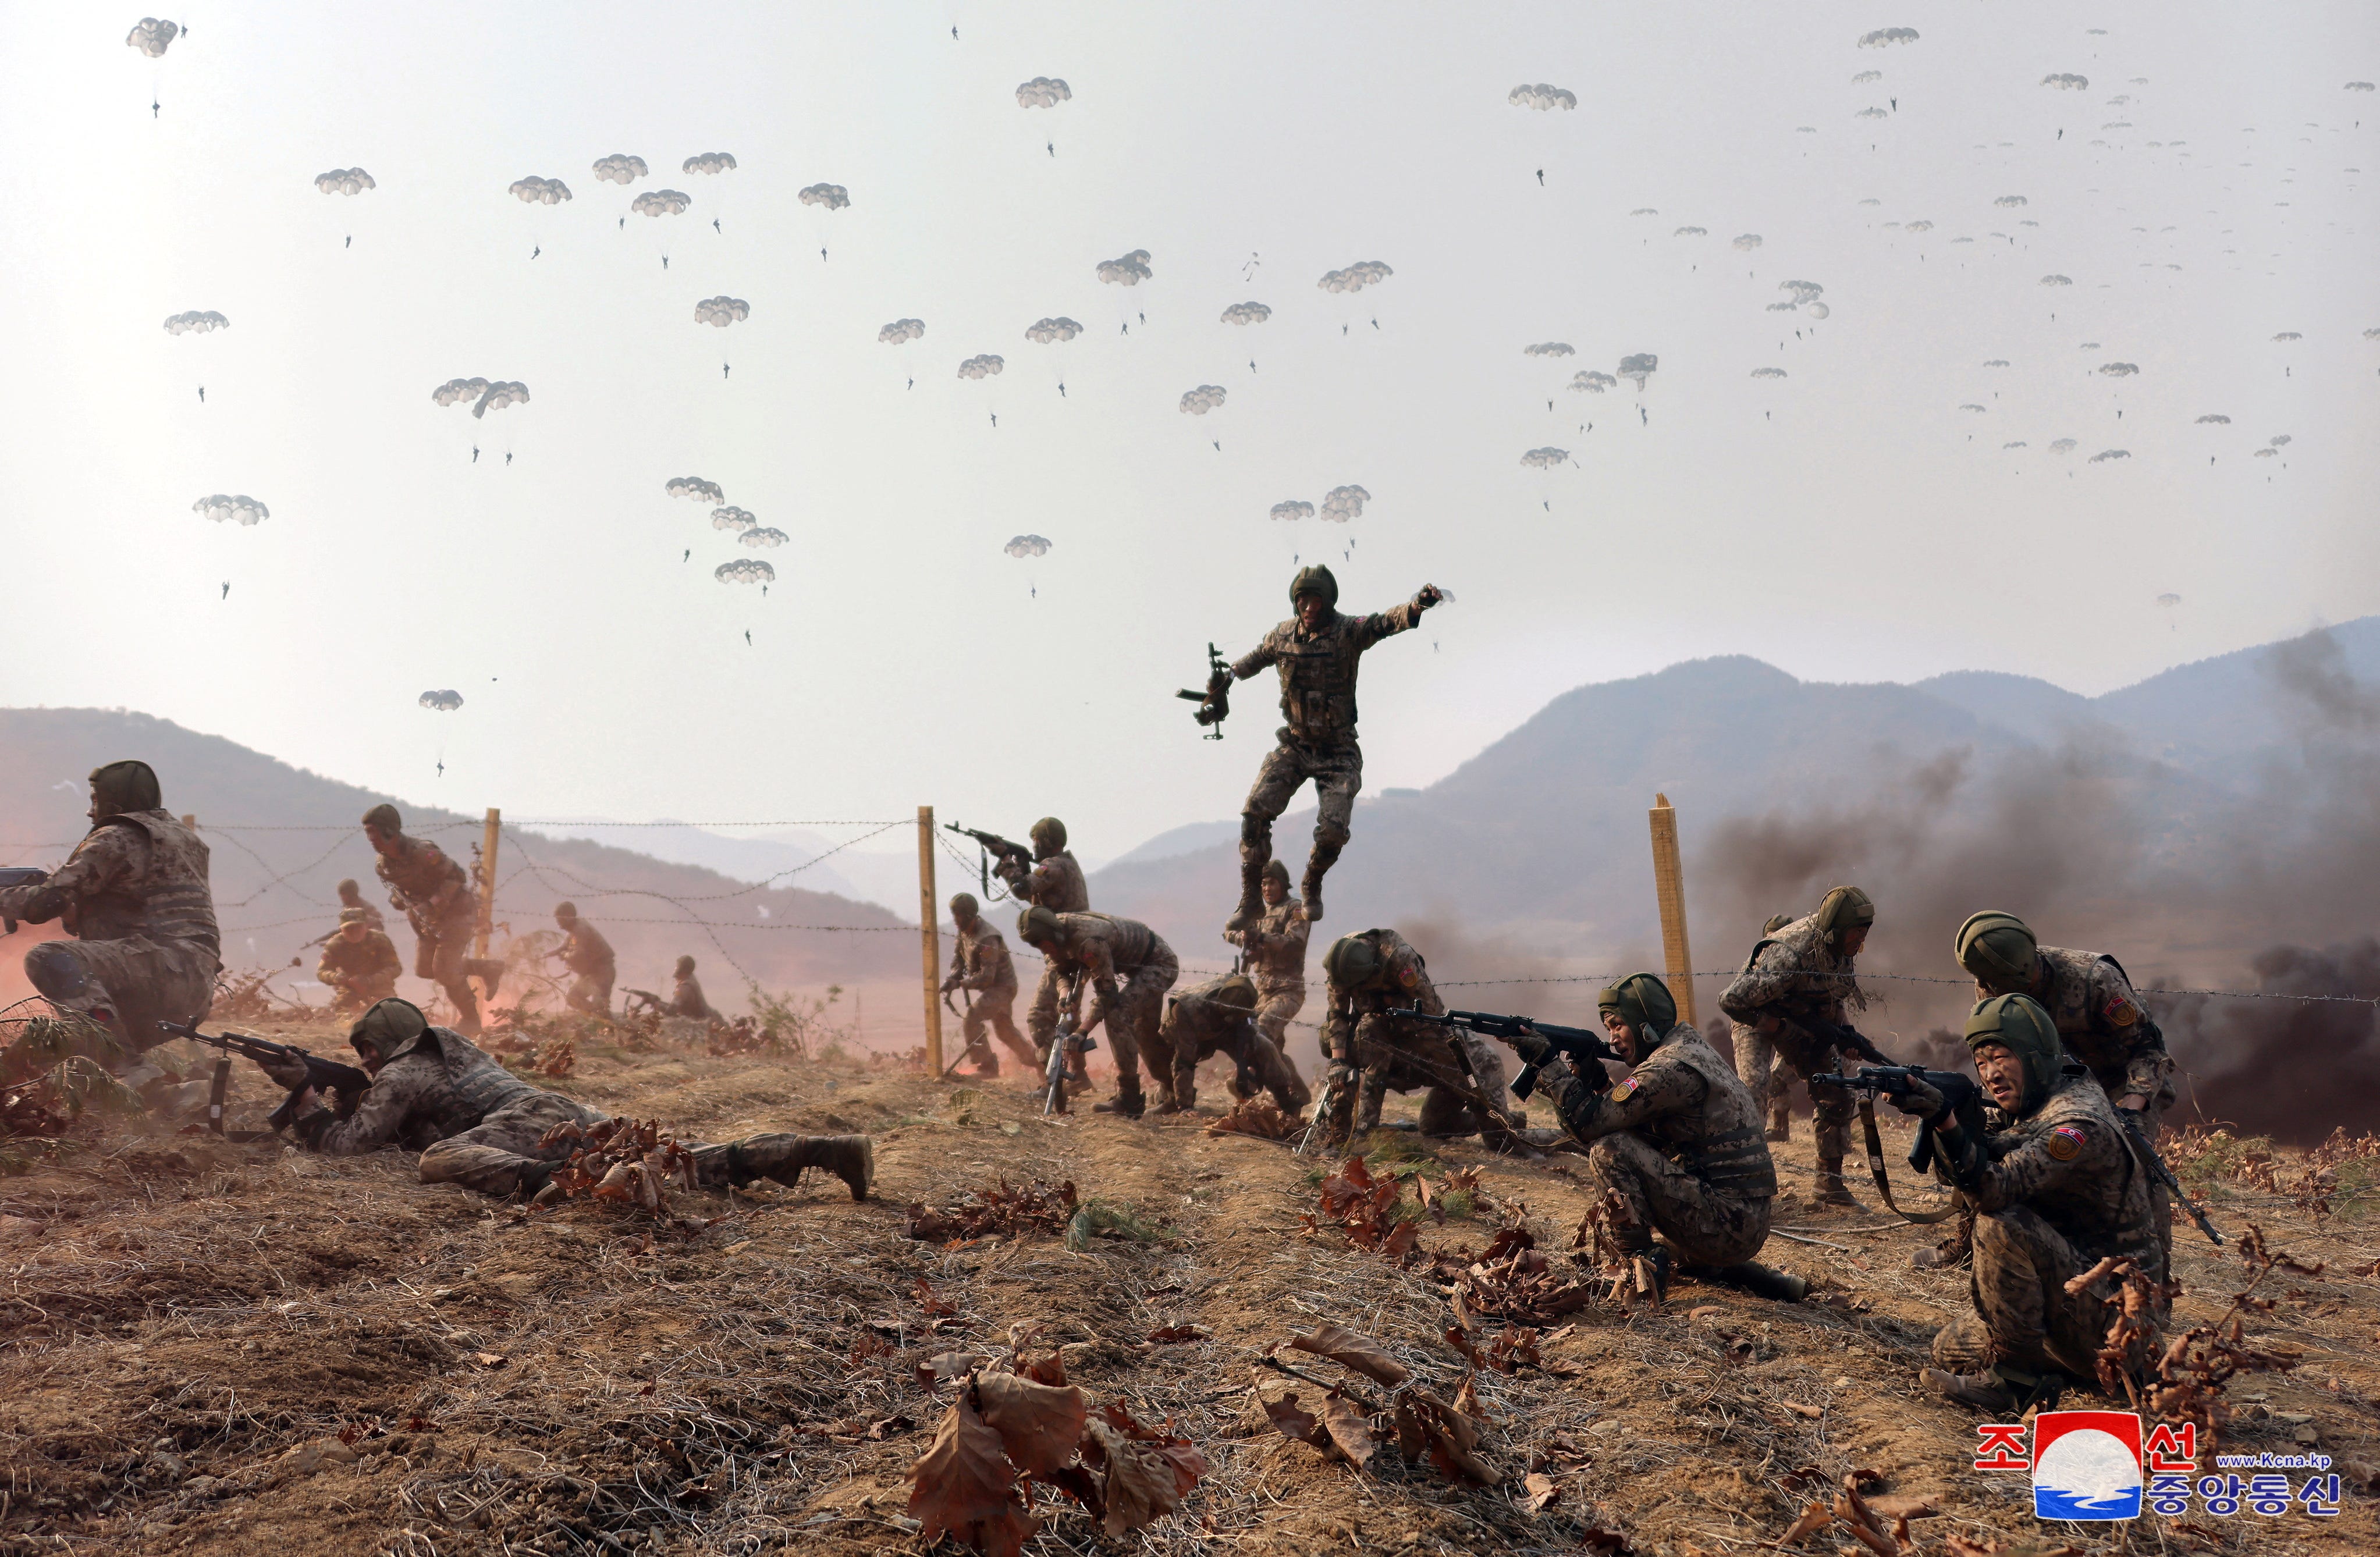 Ein nordkoreanischer Soldat springt während einer militärischen Ausbildung zusammen mit anderen Soldaten in die Luft.